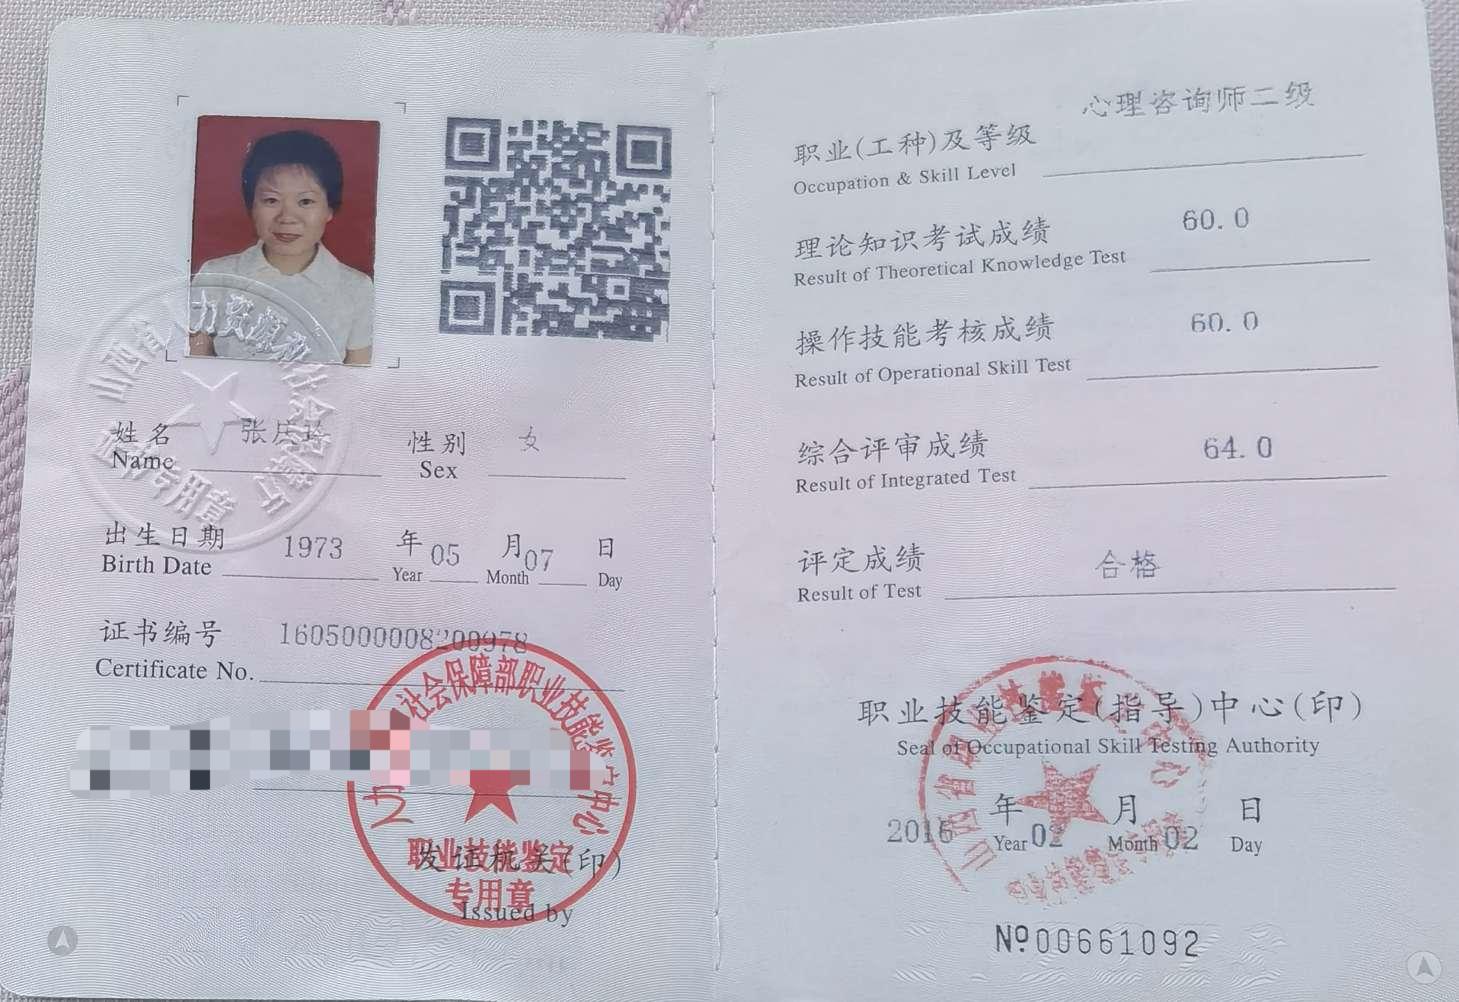 咨询师张庆玲的职业证书